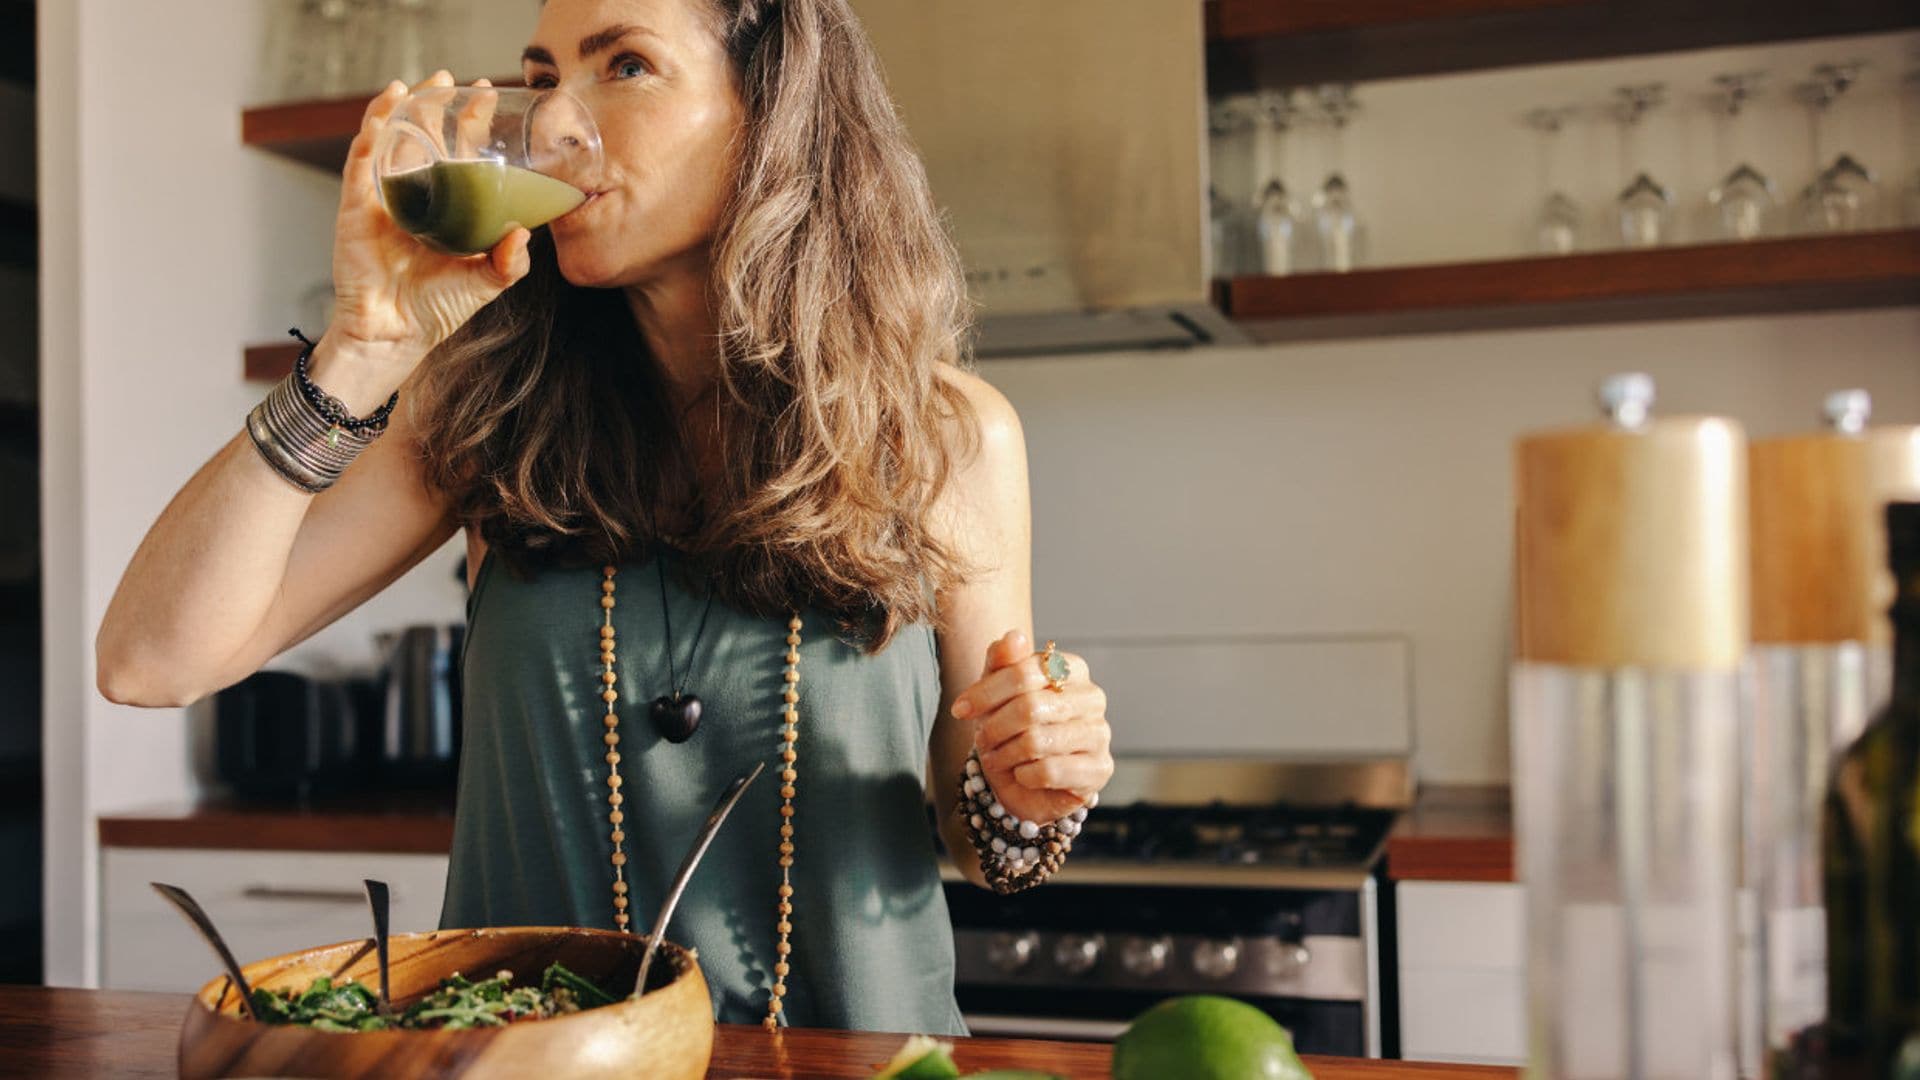 Menopausia: por qué si comes grasa (saludable) pierdes peso y funciona mejor tu organismo